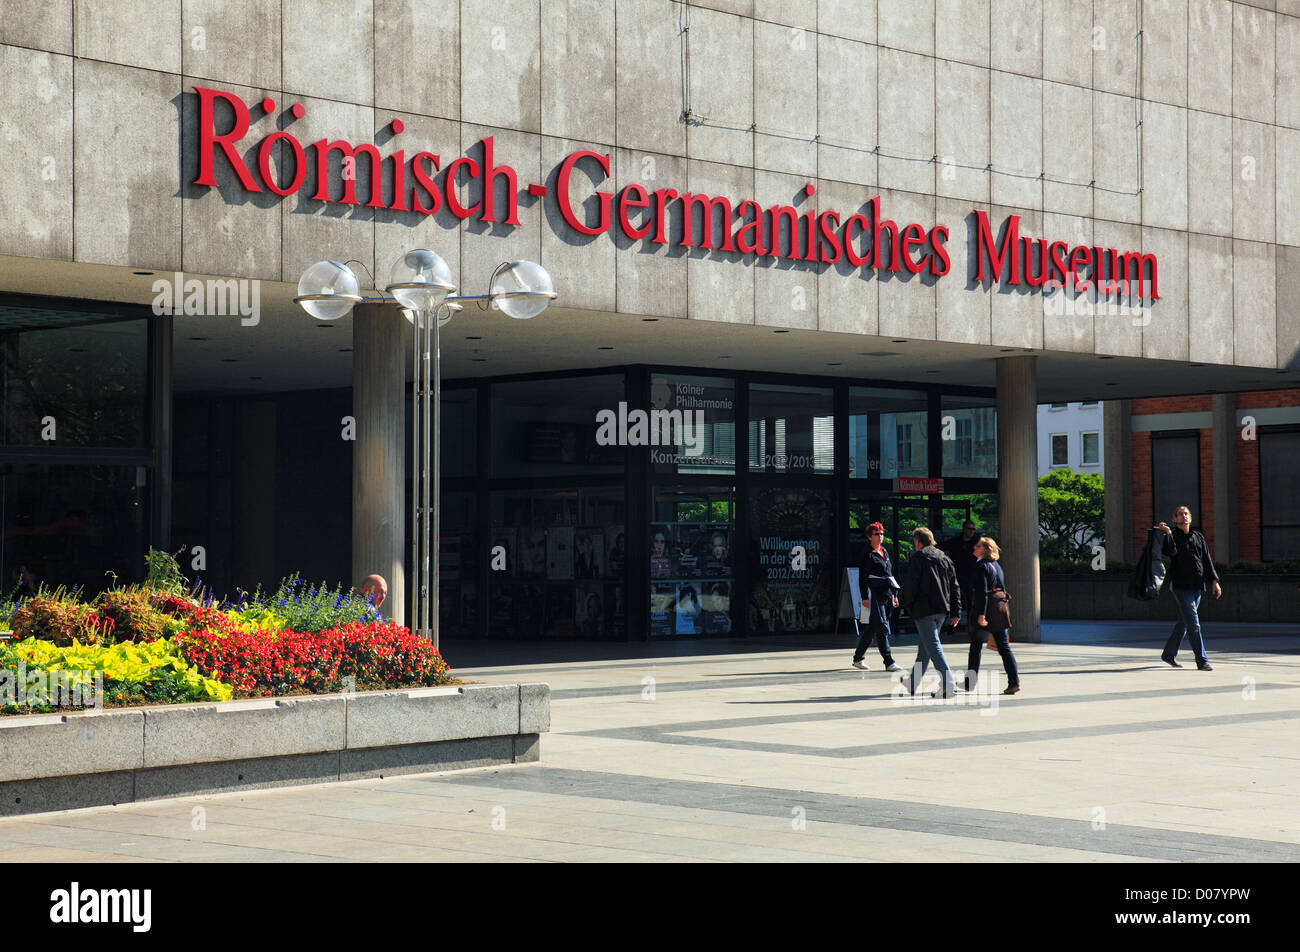 Museum am Roemisch-Germanisches Roncalliplatz dans Koeln am Rhein, Allemagne Banque D'Images